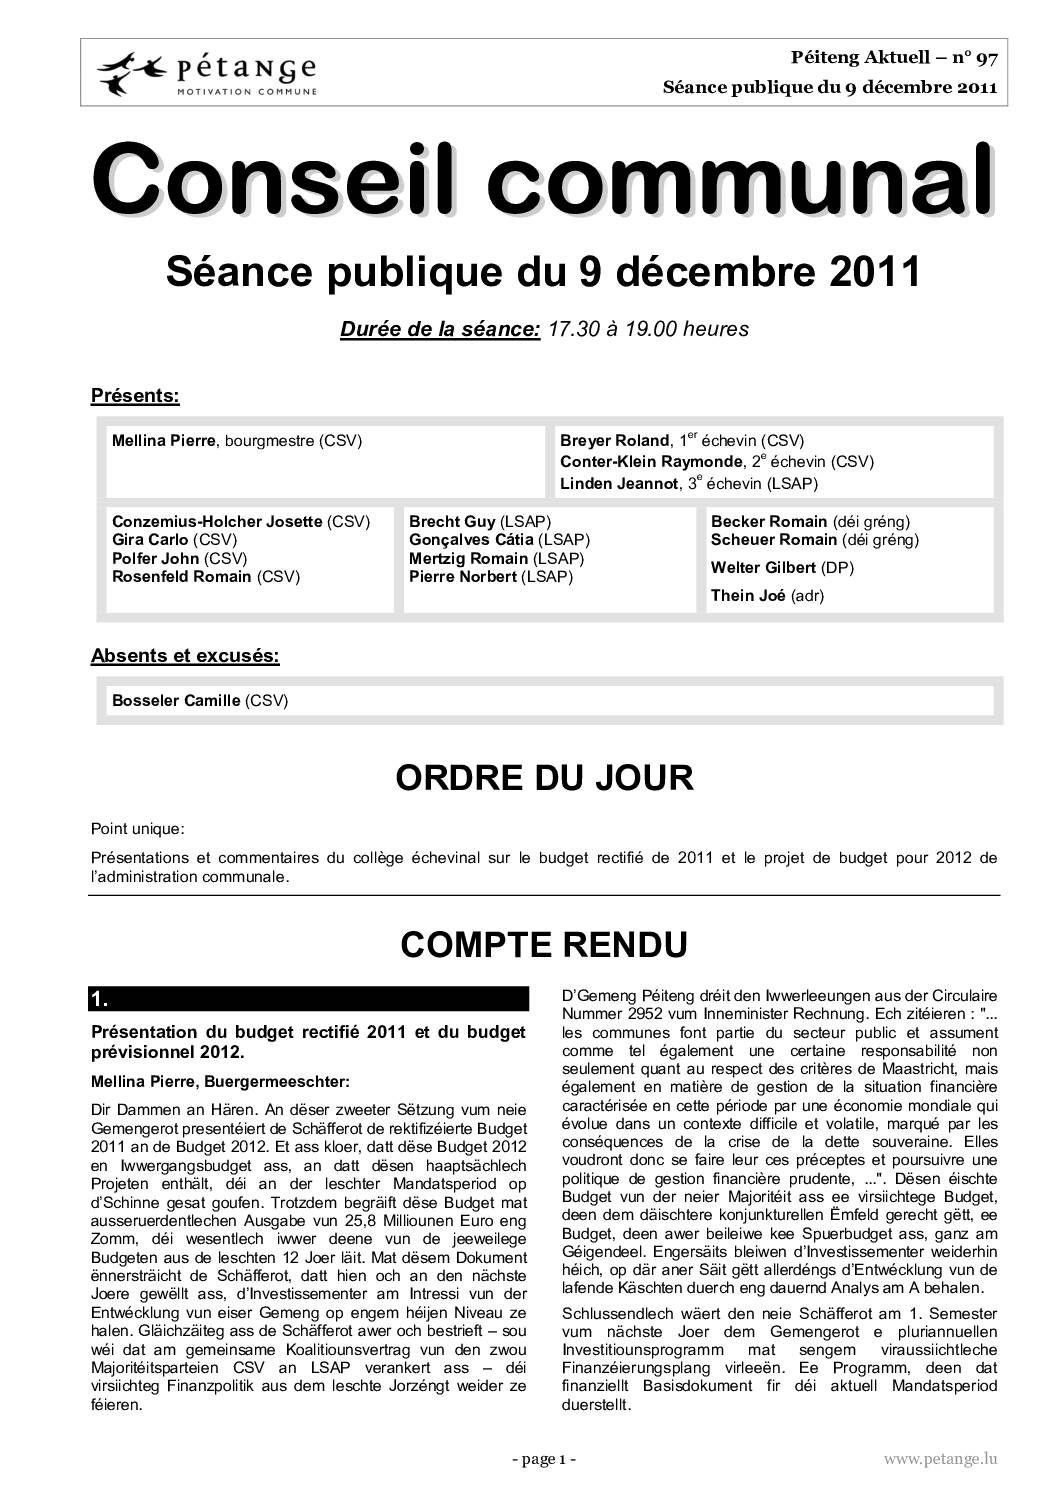 Rapport des séances du conseil communal du 09.12.2011, 12.12.2011 et 16.12.2011